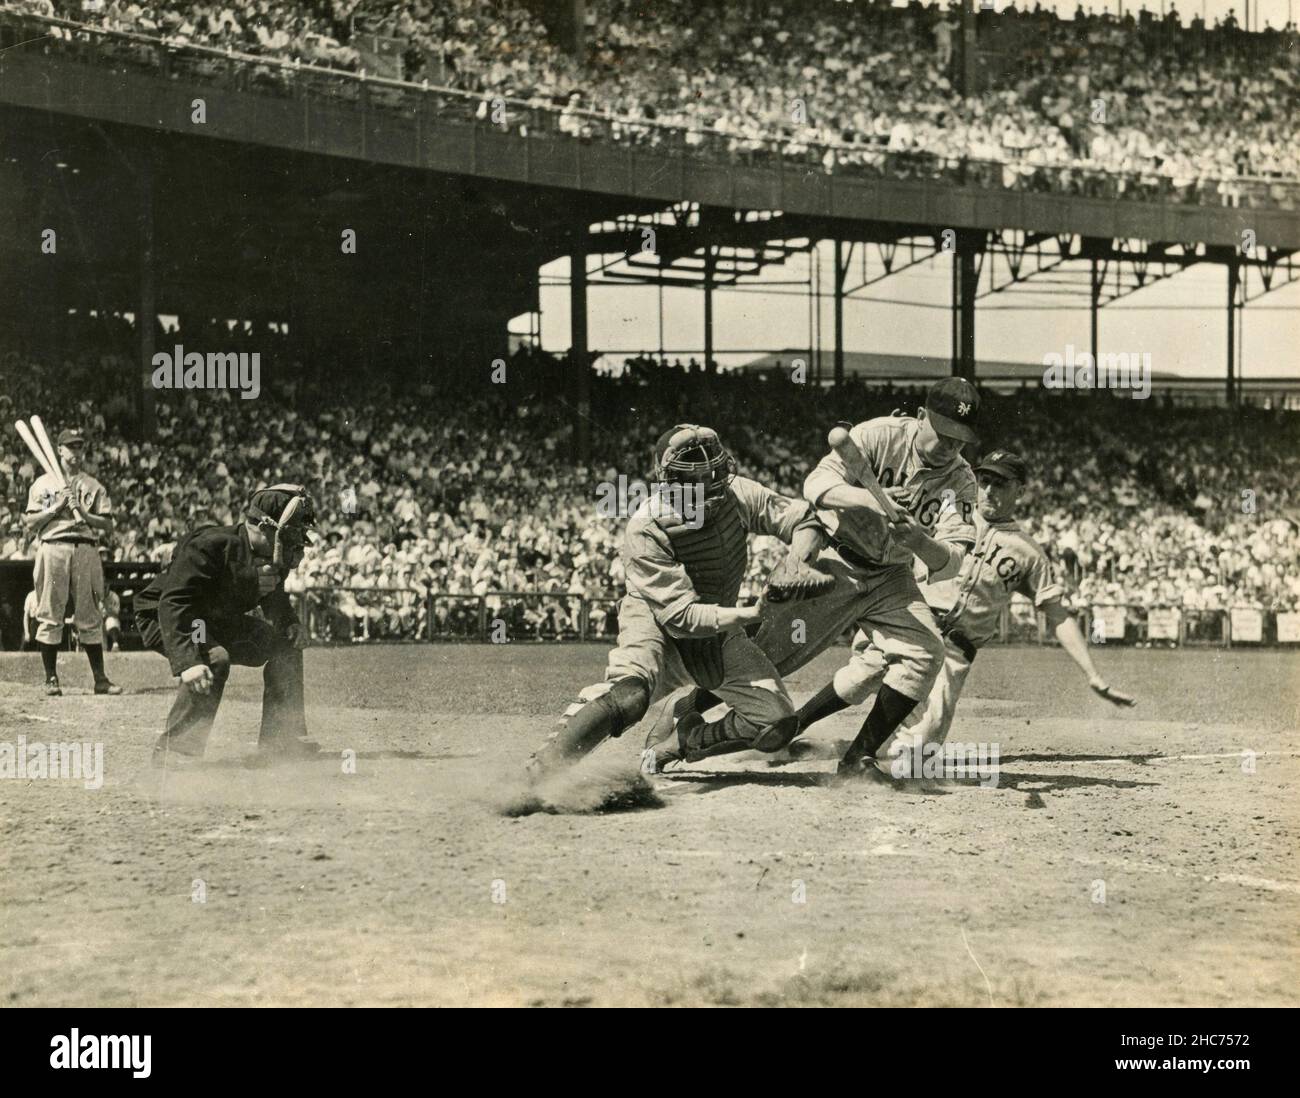 Jugadores Americanos de Béisbol en Acción, EE.UU. 1940s Foto de stock